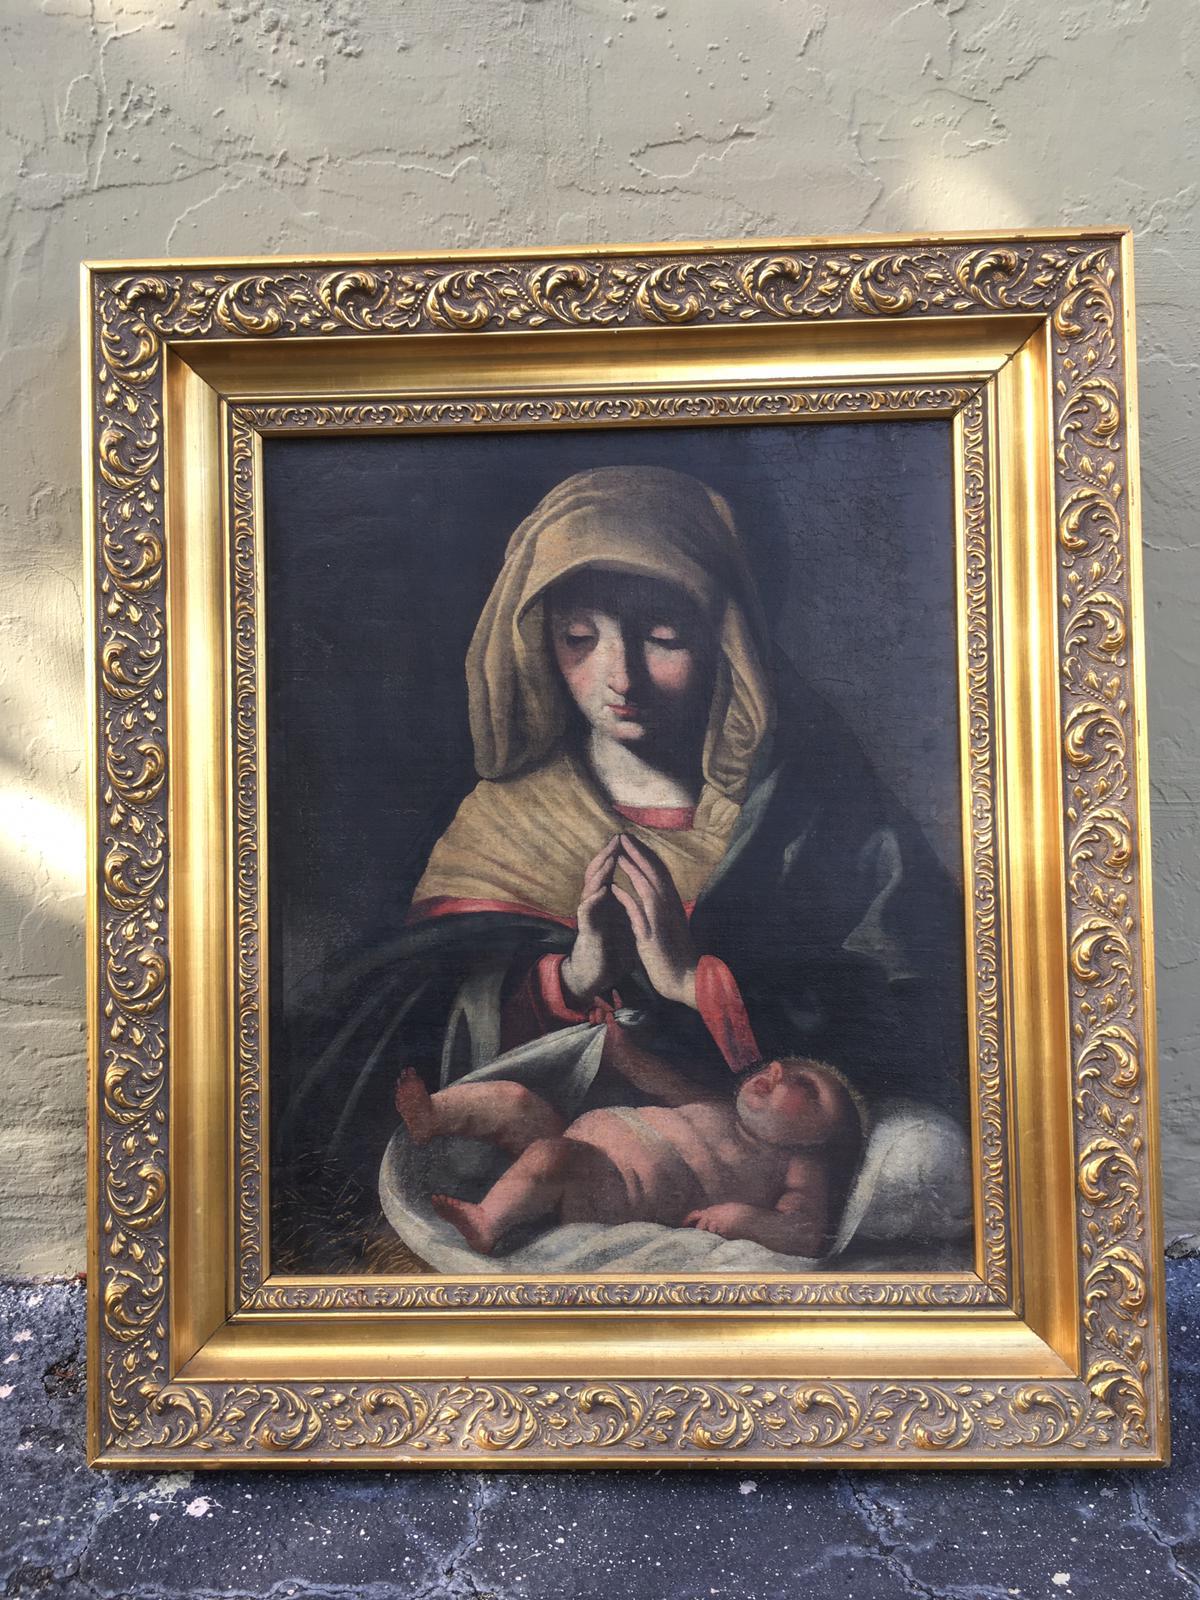 Madonna mit Kind, klassisches Gemälde des 19. Jahrhunderts.
Dieses schöne Ölgemälde wurde in Spanien erworben.
Der Künstler ist unbekannt.
Das Gemälde hat noch seine ursprüngliche Oberfläche und wurde nicht retuschiert.
Der Holzrahmen ist gut zu